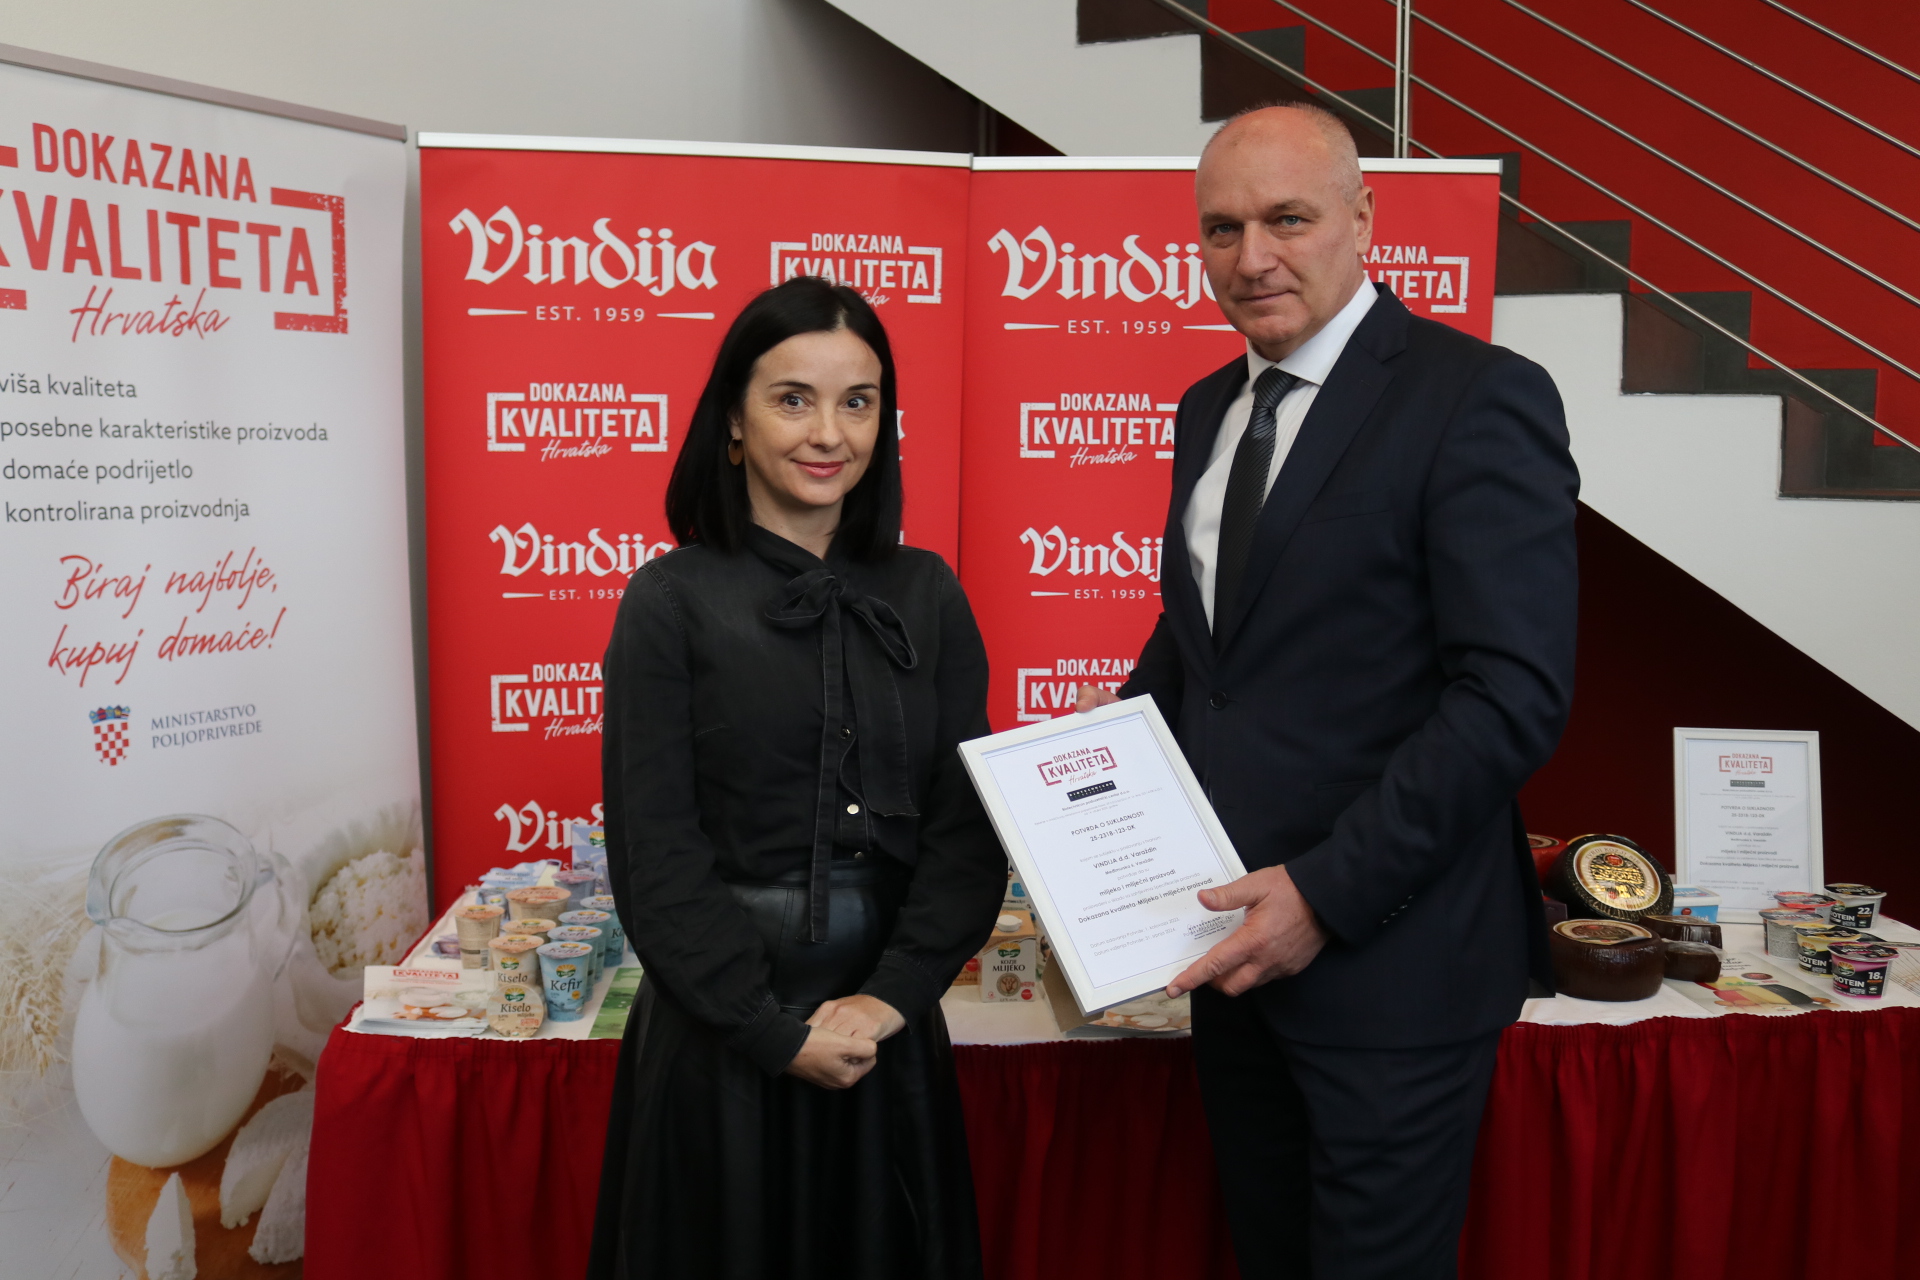 Vindija postala prva domaća kompanija s certifikatom „Dokazana kvaliteta Hrvatska“ za mlijeko i mliječne proizvode